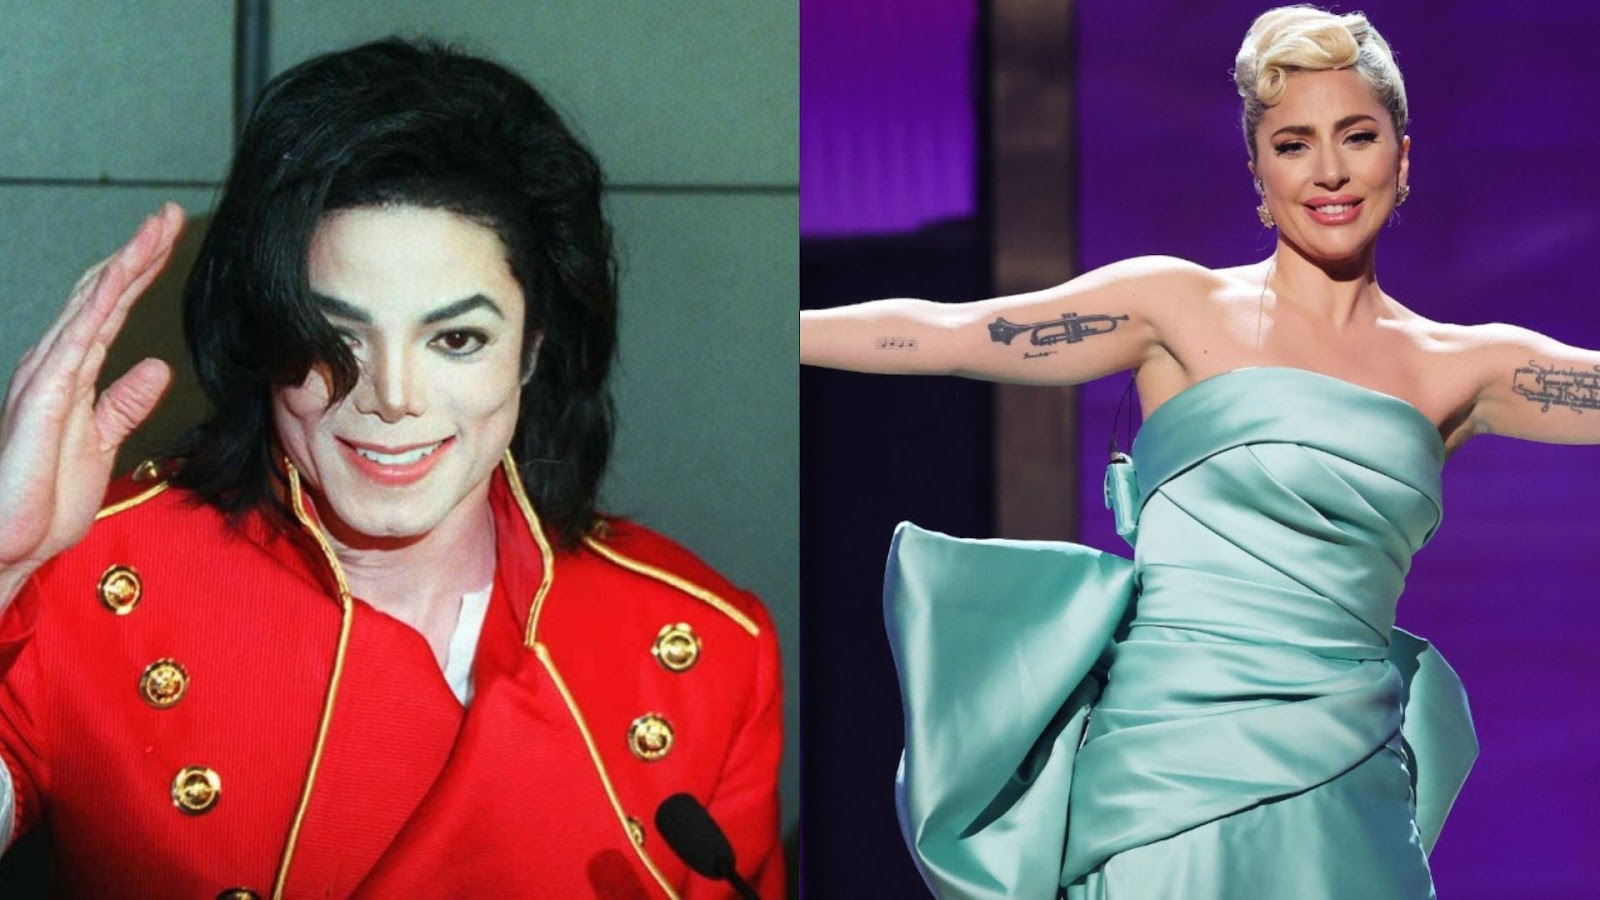 Imagem de conteúdo da notícia "Michael Jackson tinha planos de cantar com Lady Gaga" #1